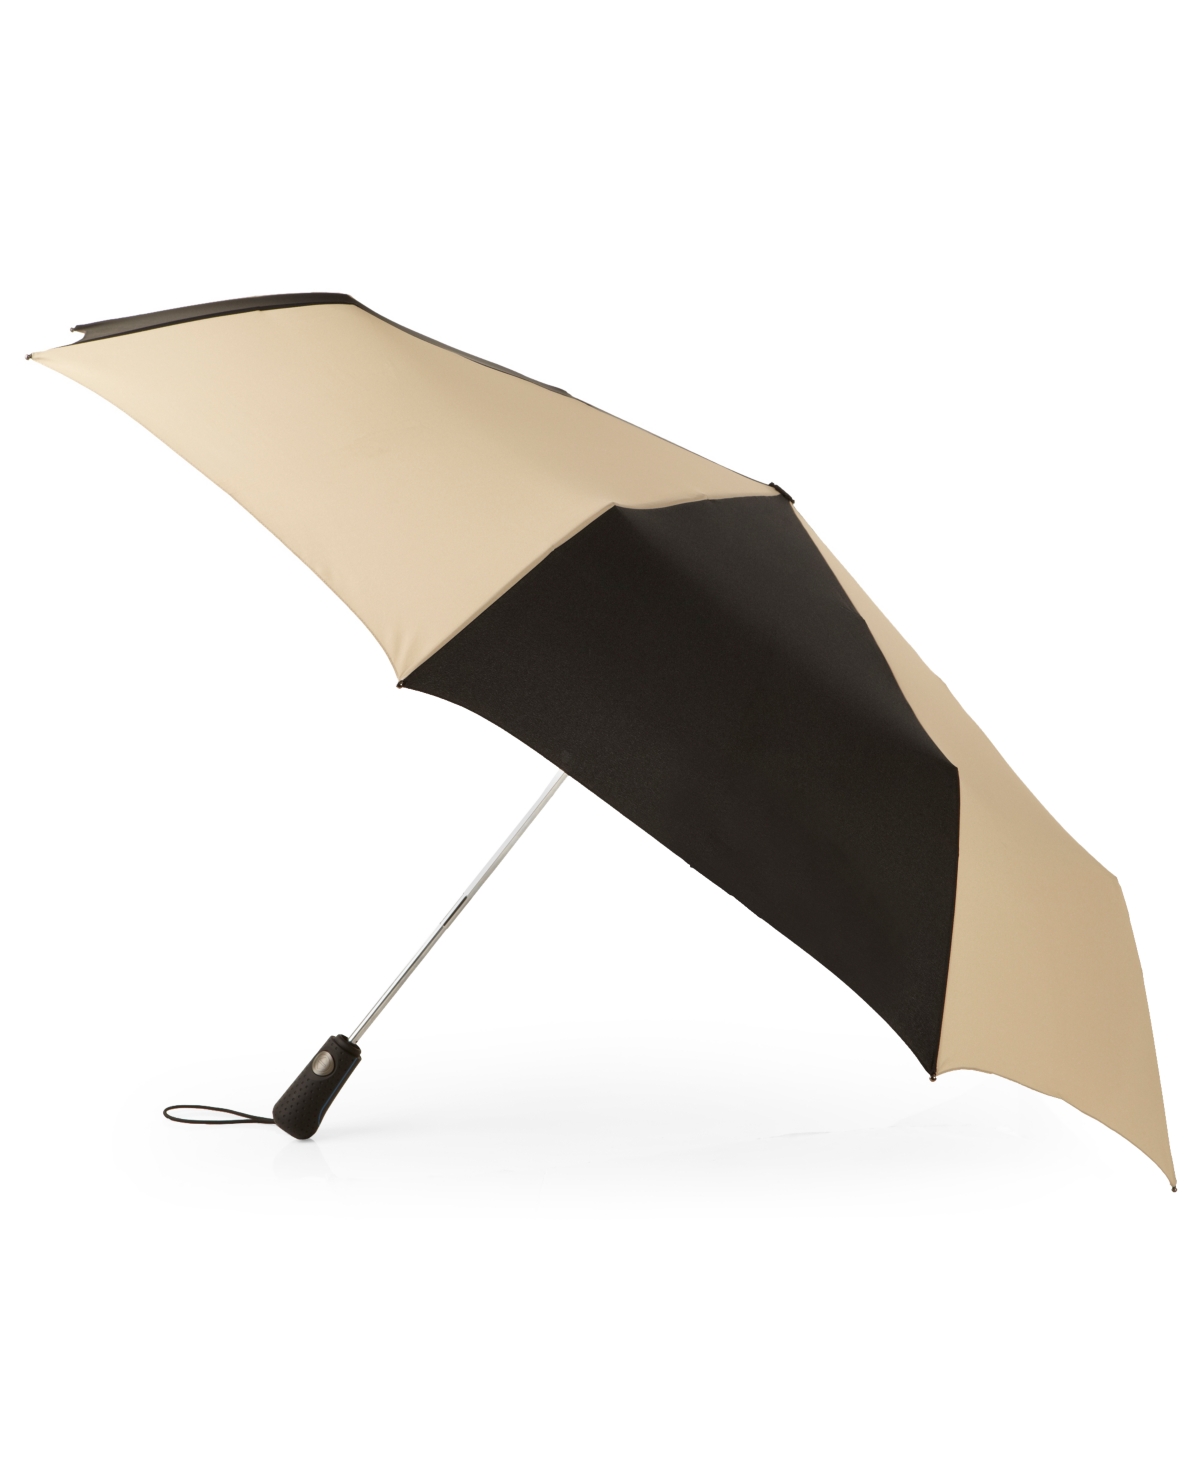 Aoc Golf Size Umbrella - Black/Tan